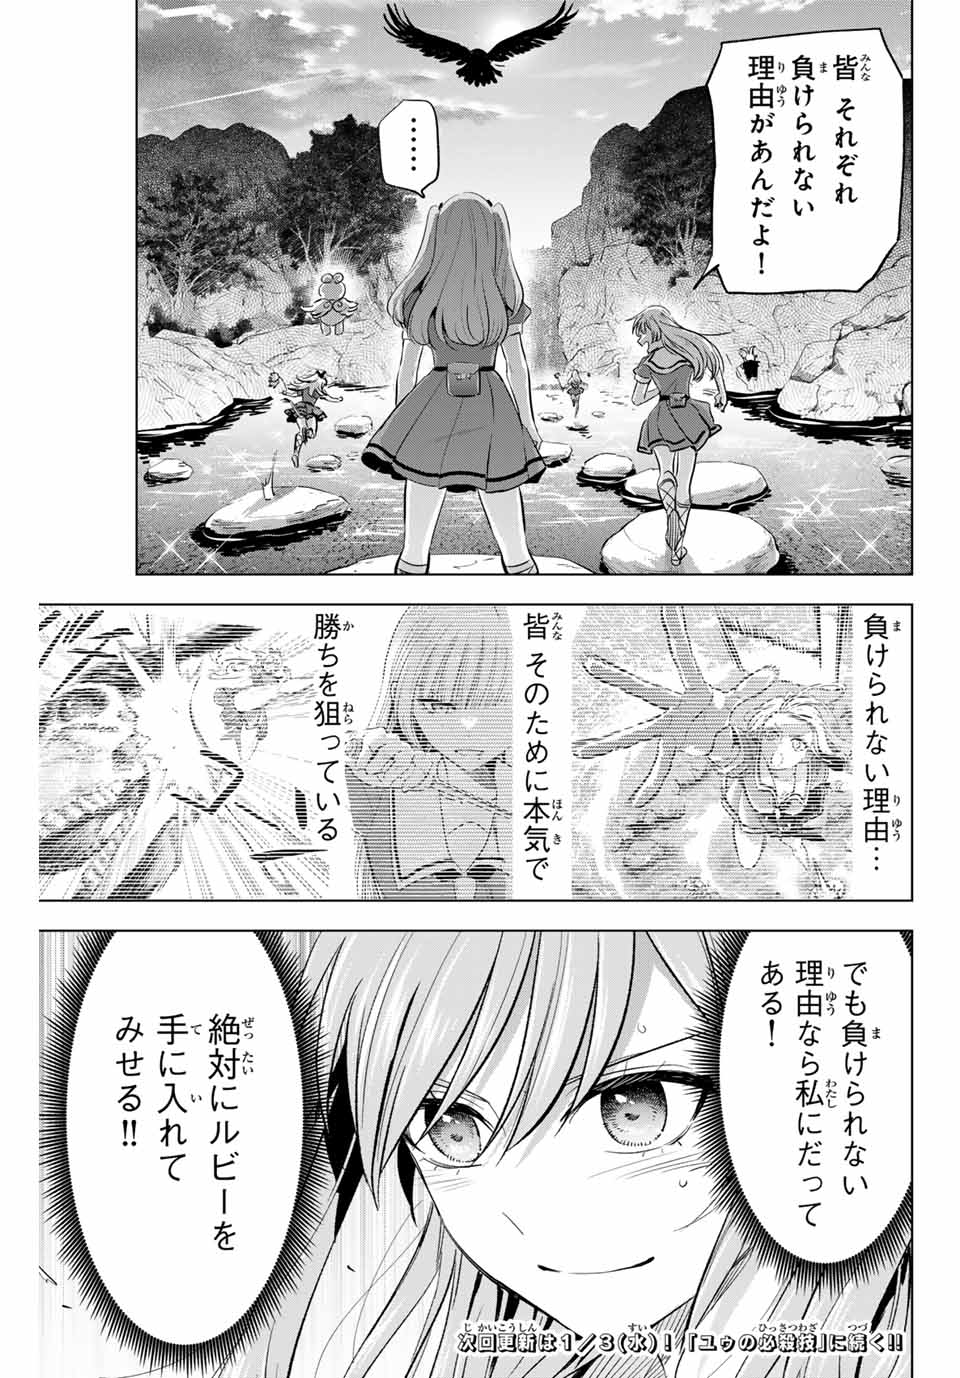 Kuroneko to Majo no Kyoushitsu - Chapter 49 - Page 21